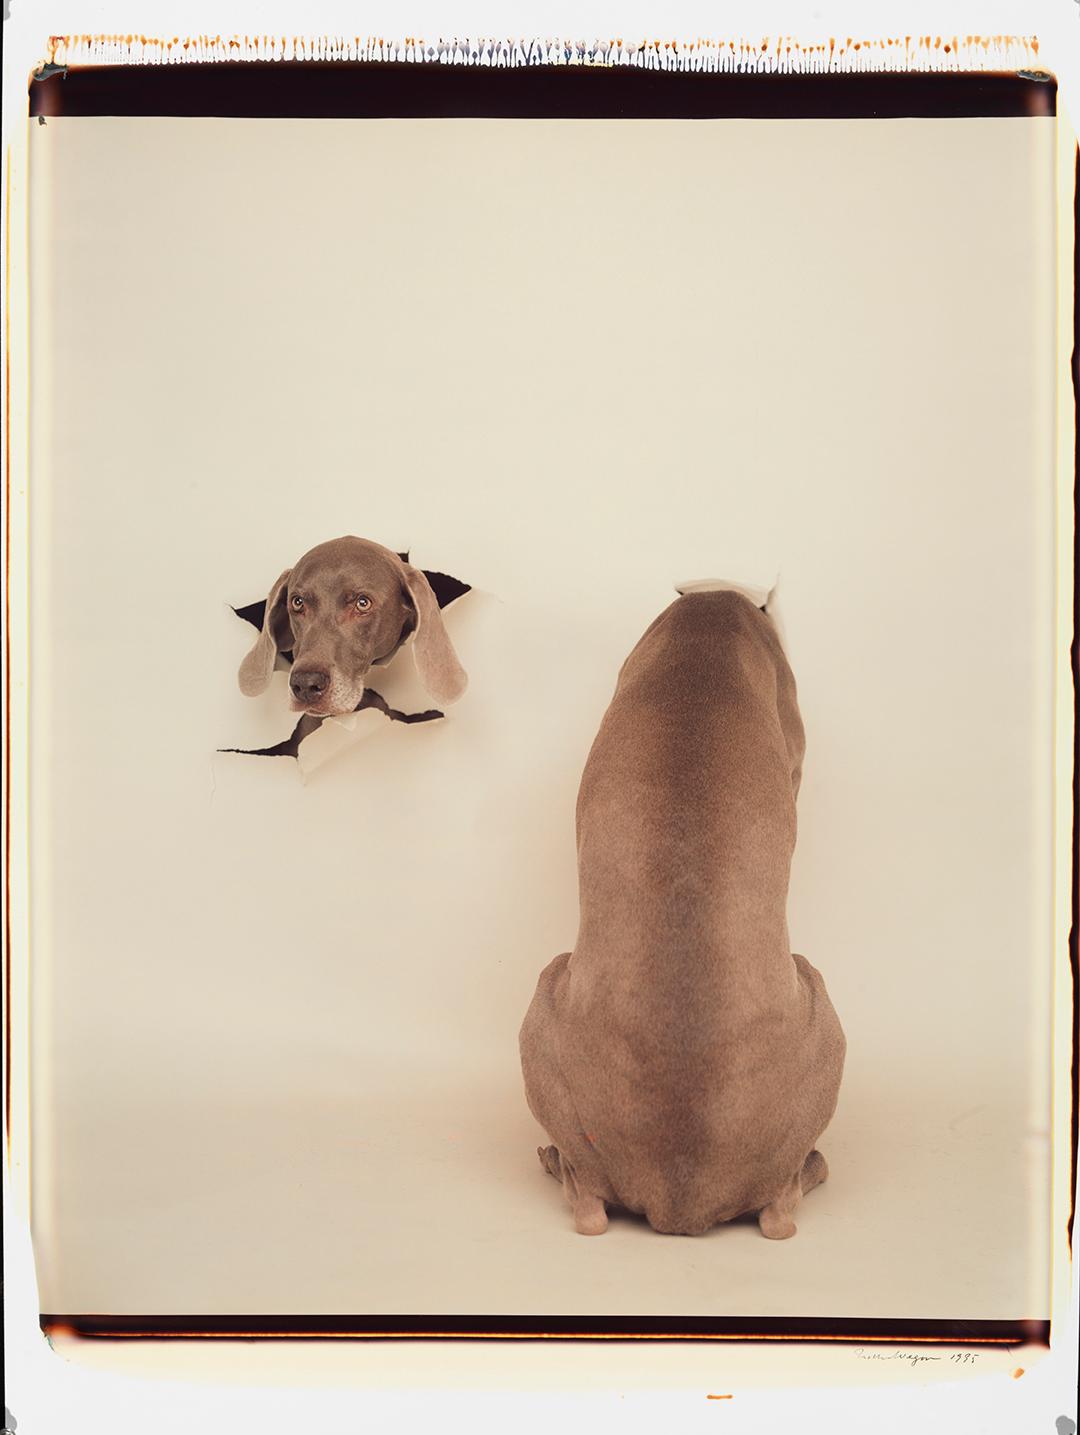 Breakout - William Wegman (Farbfotografie)
Signiert und beschriftet mit Titel
Einzigartiger Farb-Polaroiddruck, gedruckt 1995
24 x 20 Zoll

Die Hunde, die mit Perücken, Kostümen und Requisiten ausgestattet sind, zeigen eine breite Palette